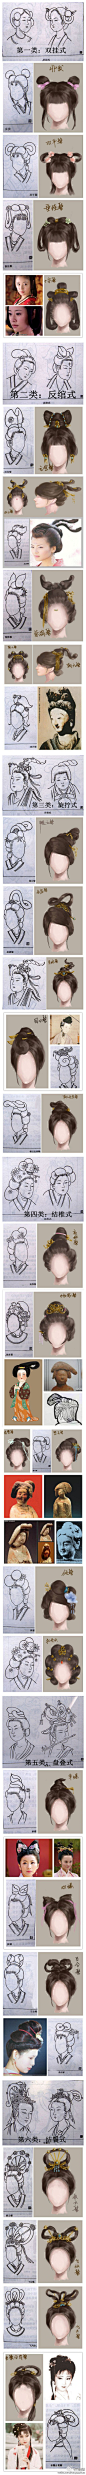 #科普贴#【揭密古代女子发型】古代女子的发型，基本上可以分为以下六类：双挂式、反绾式、拧旋式、结椎式、盘叠式、结鬟式。发型与发冠既能增加女子的仪容美貌，又是区分女子年龄和身份的重要标志。今天来科普一下古代女子的发式：http://t.cn/zHIkq5z